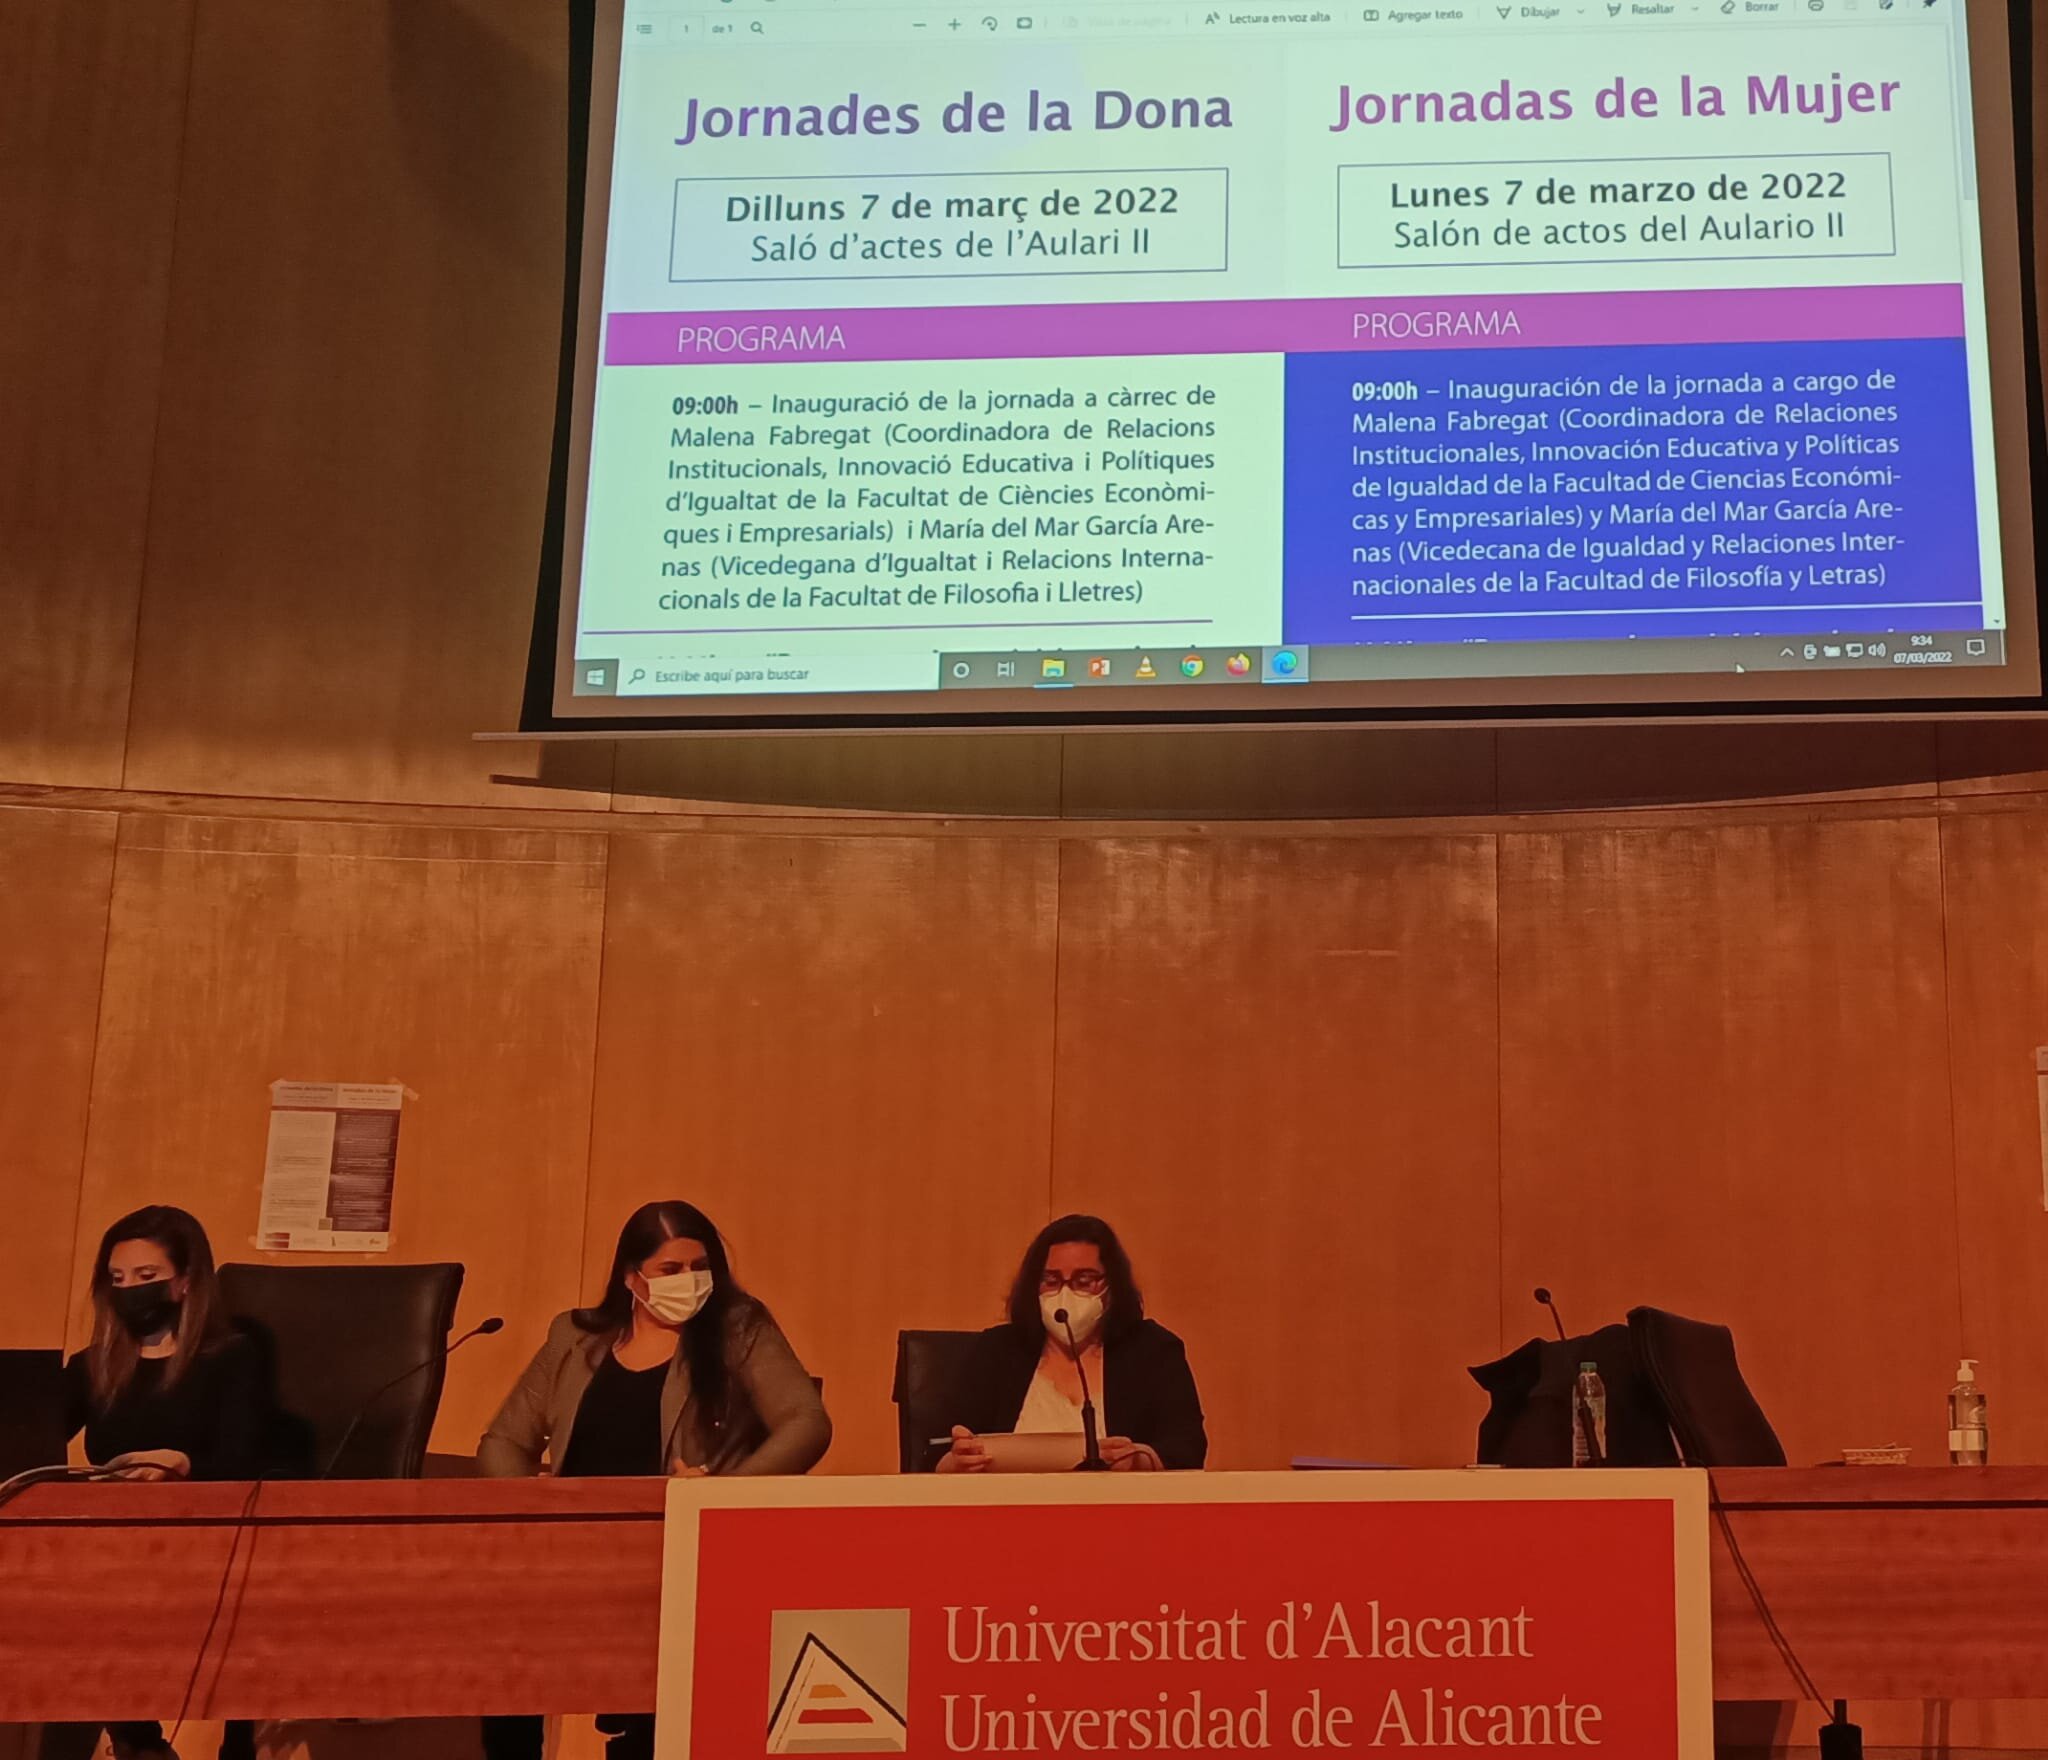  Jornadas de la Mujer en la Universidad de Alicante 